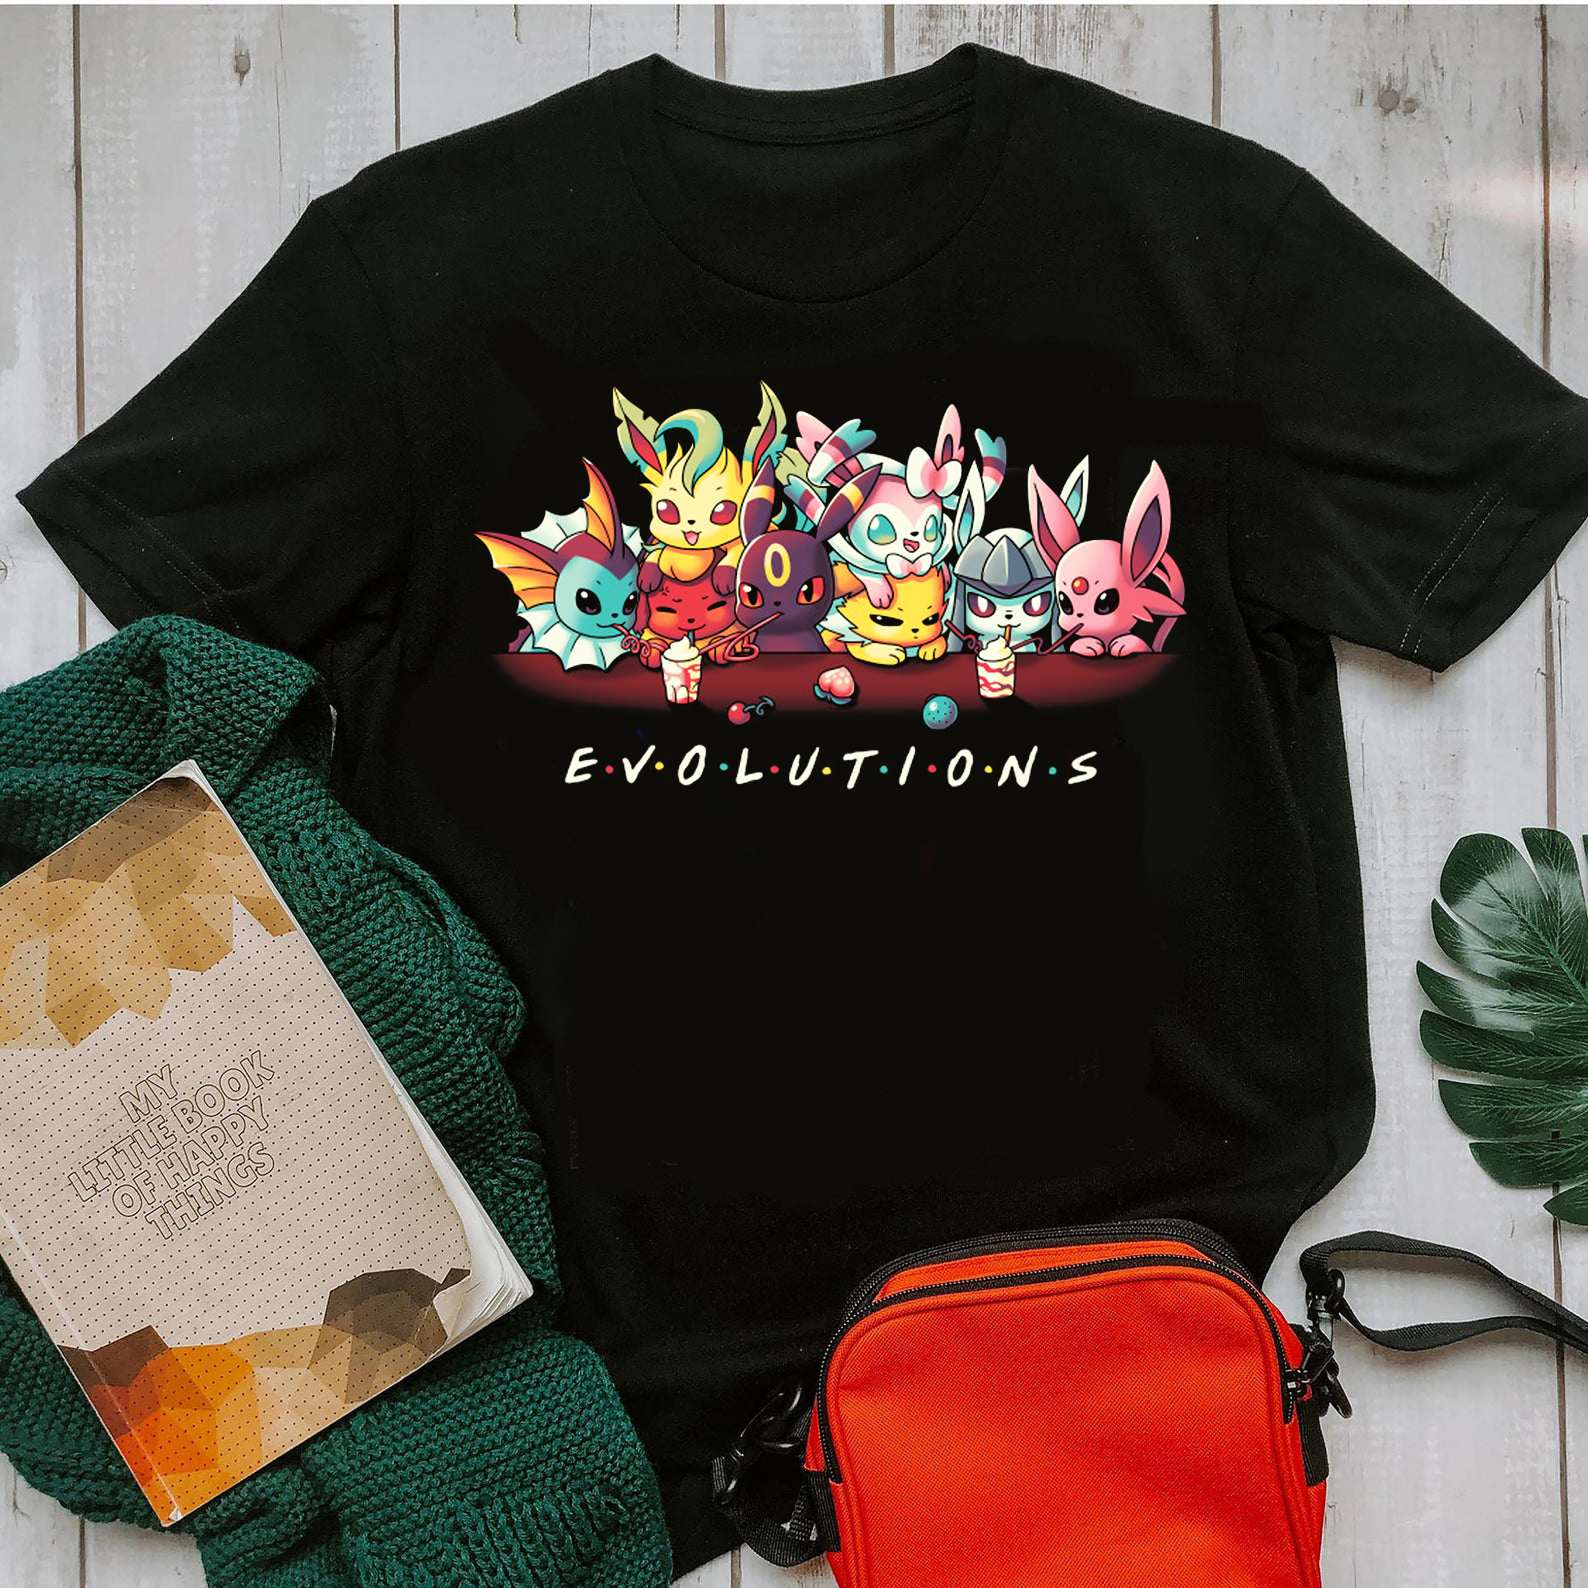 Evolution of Pokemon, Pokemon Friends T shirt, Pokemon T shirt, Pikachu T shirt, Friends T shirt, Friends Tv show